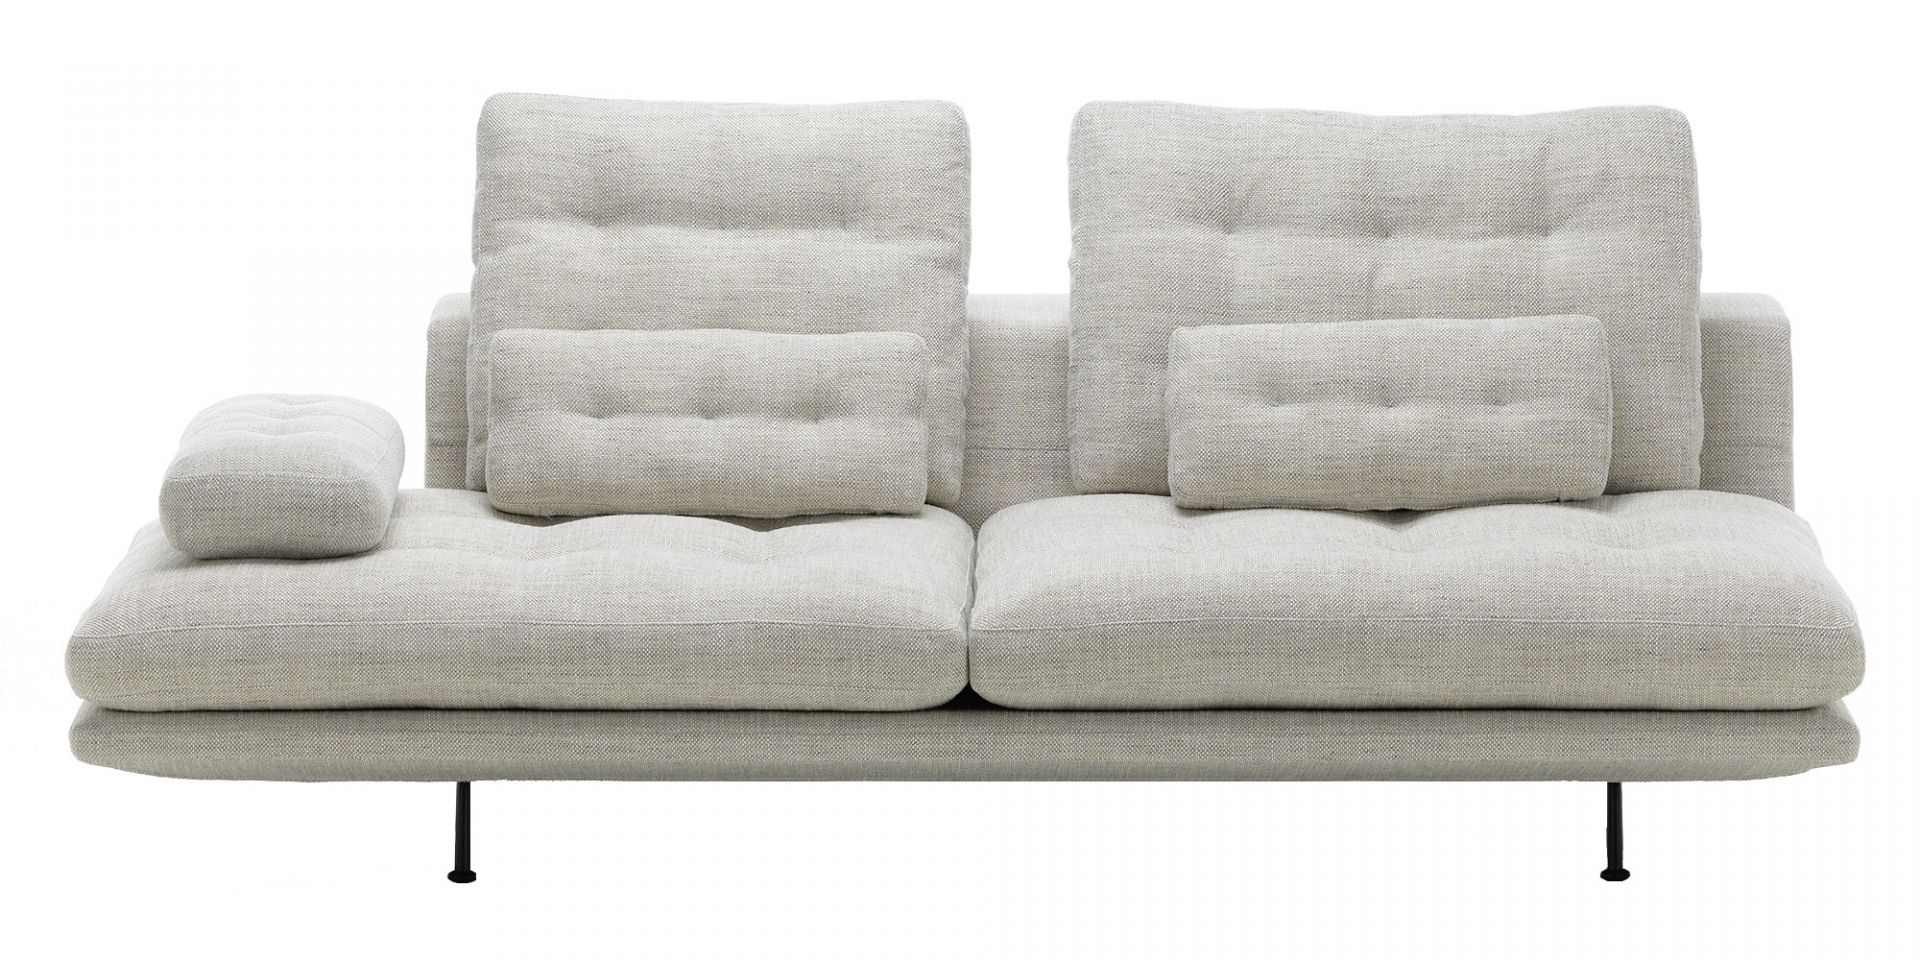 Vitra designové sedačky Grand Sofa 3 open (cena bez polštářů) - DESIGNPROPAGANDA